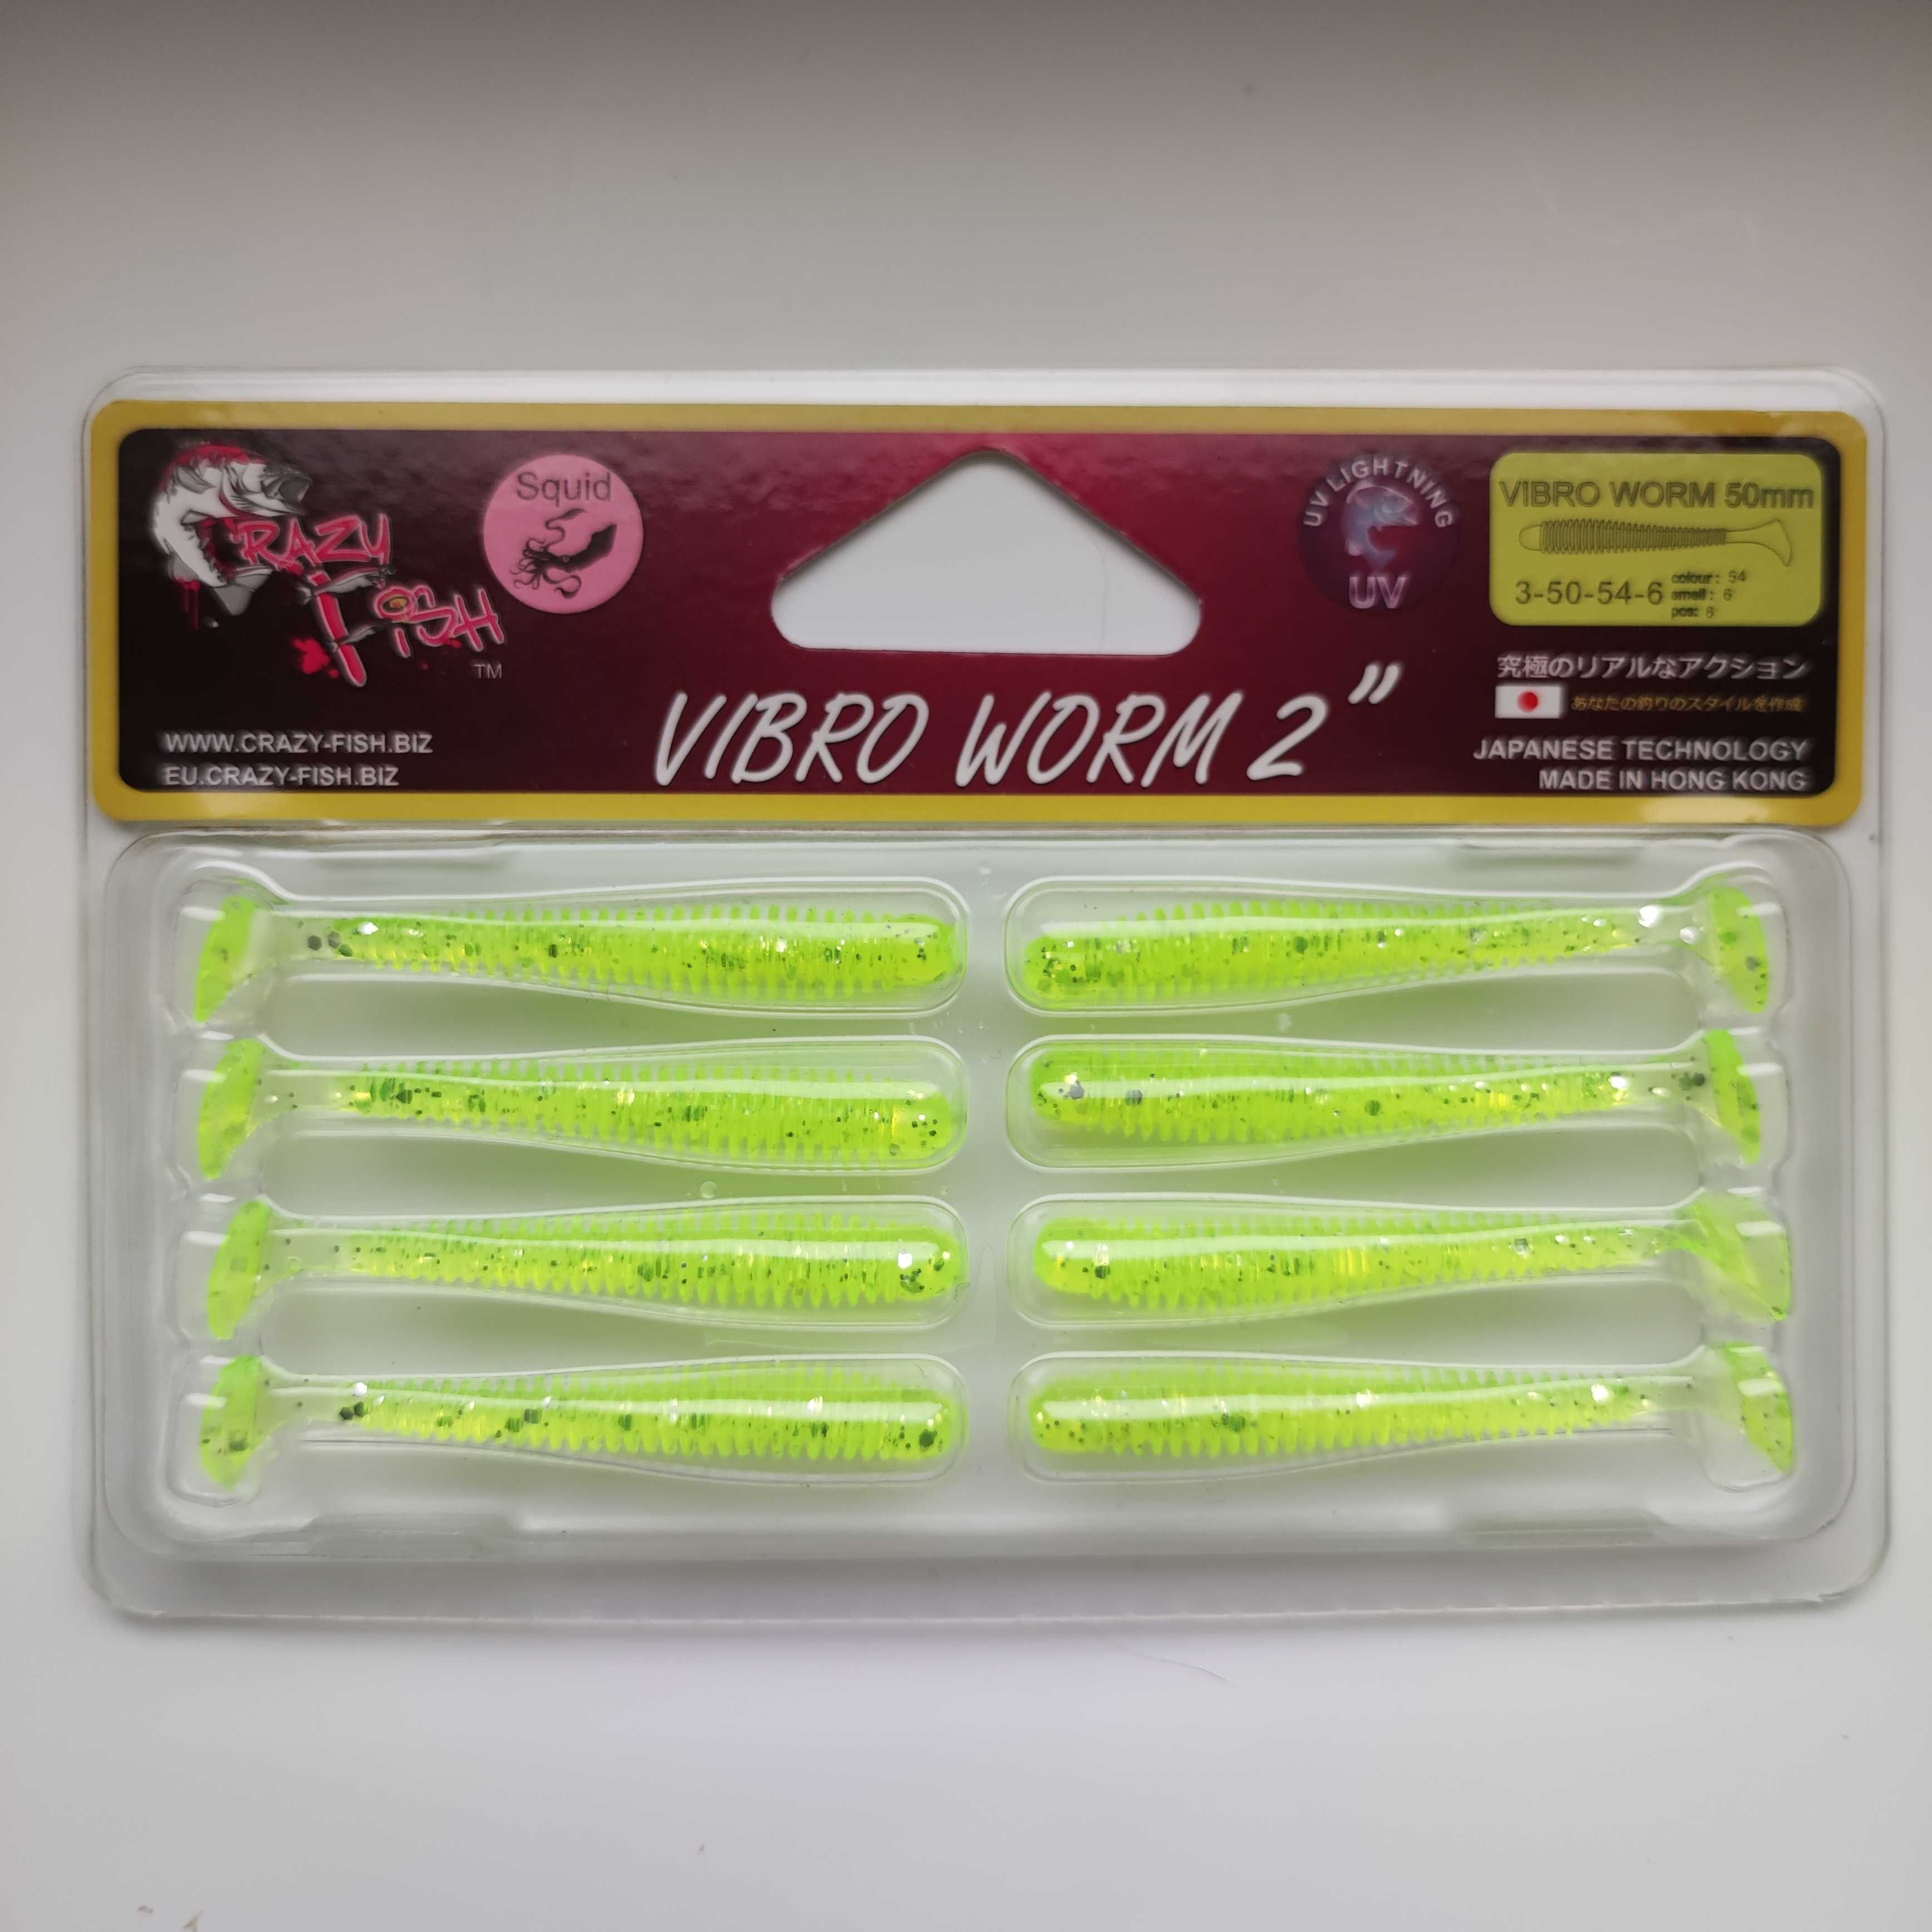 Crazy Fish Vibro Worm 2" uniwersalny pływający robak o długości 5 cm